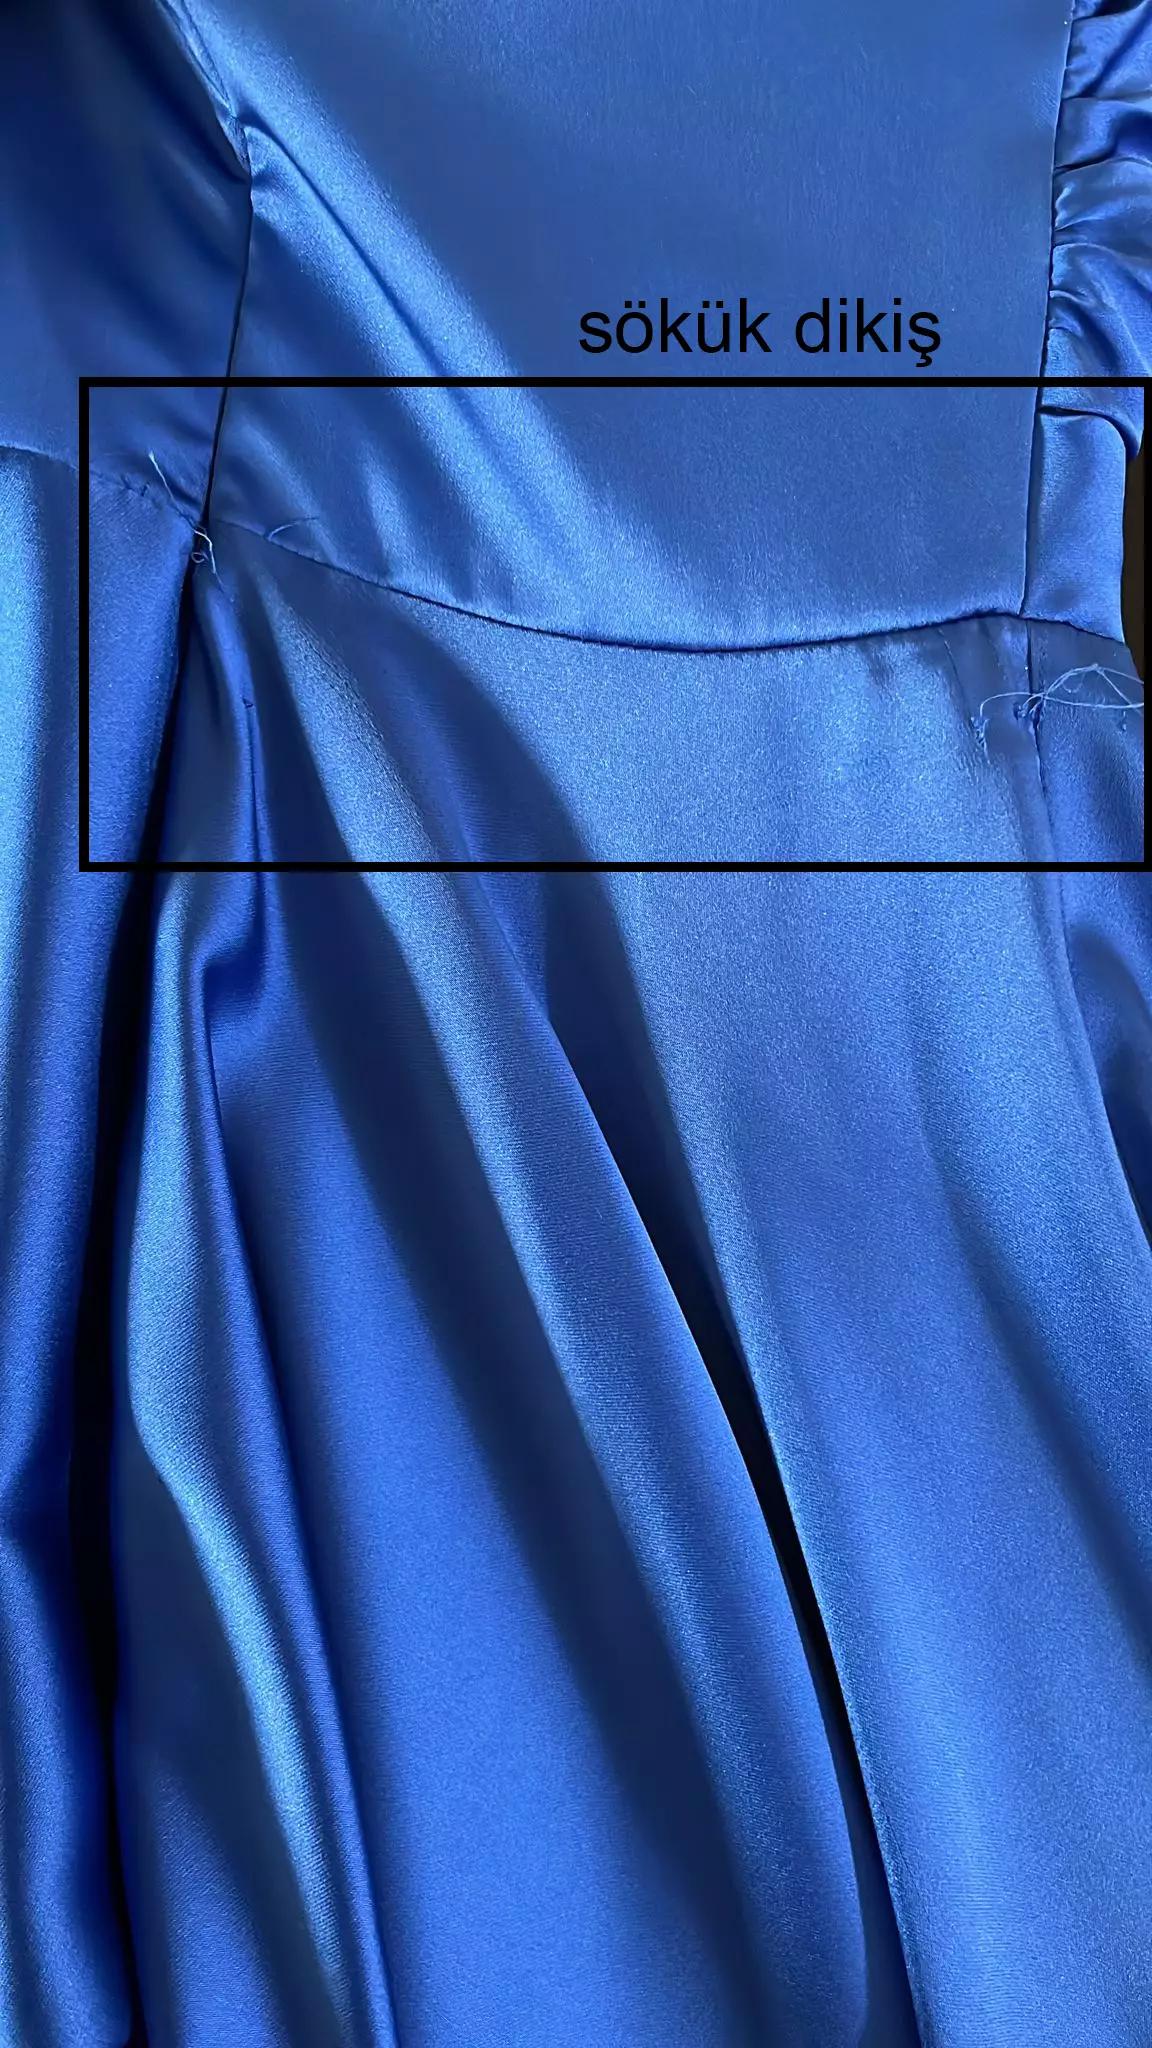 Blue satin sleeveless maxi dress